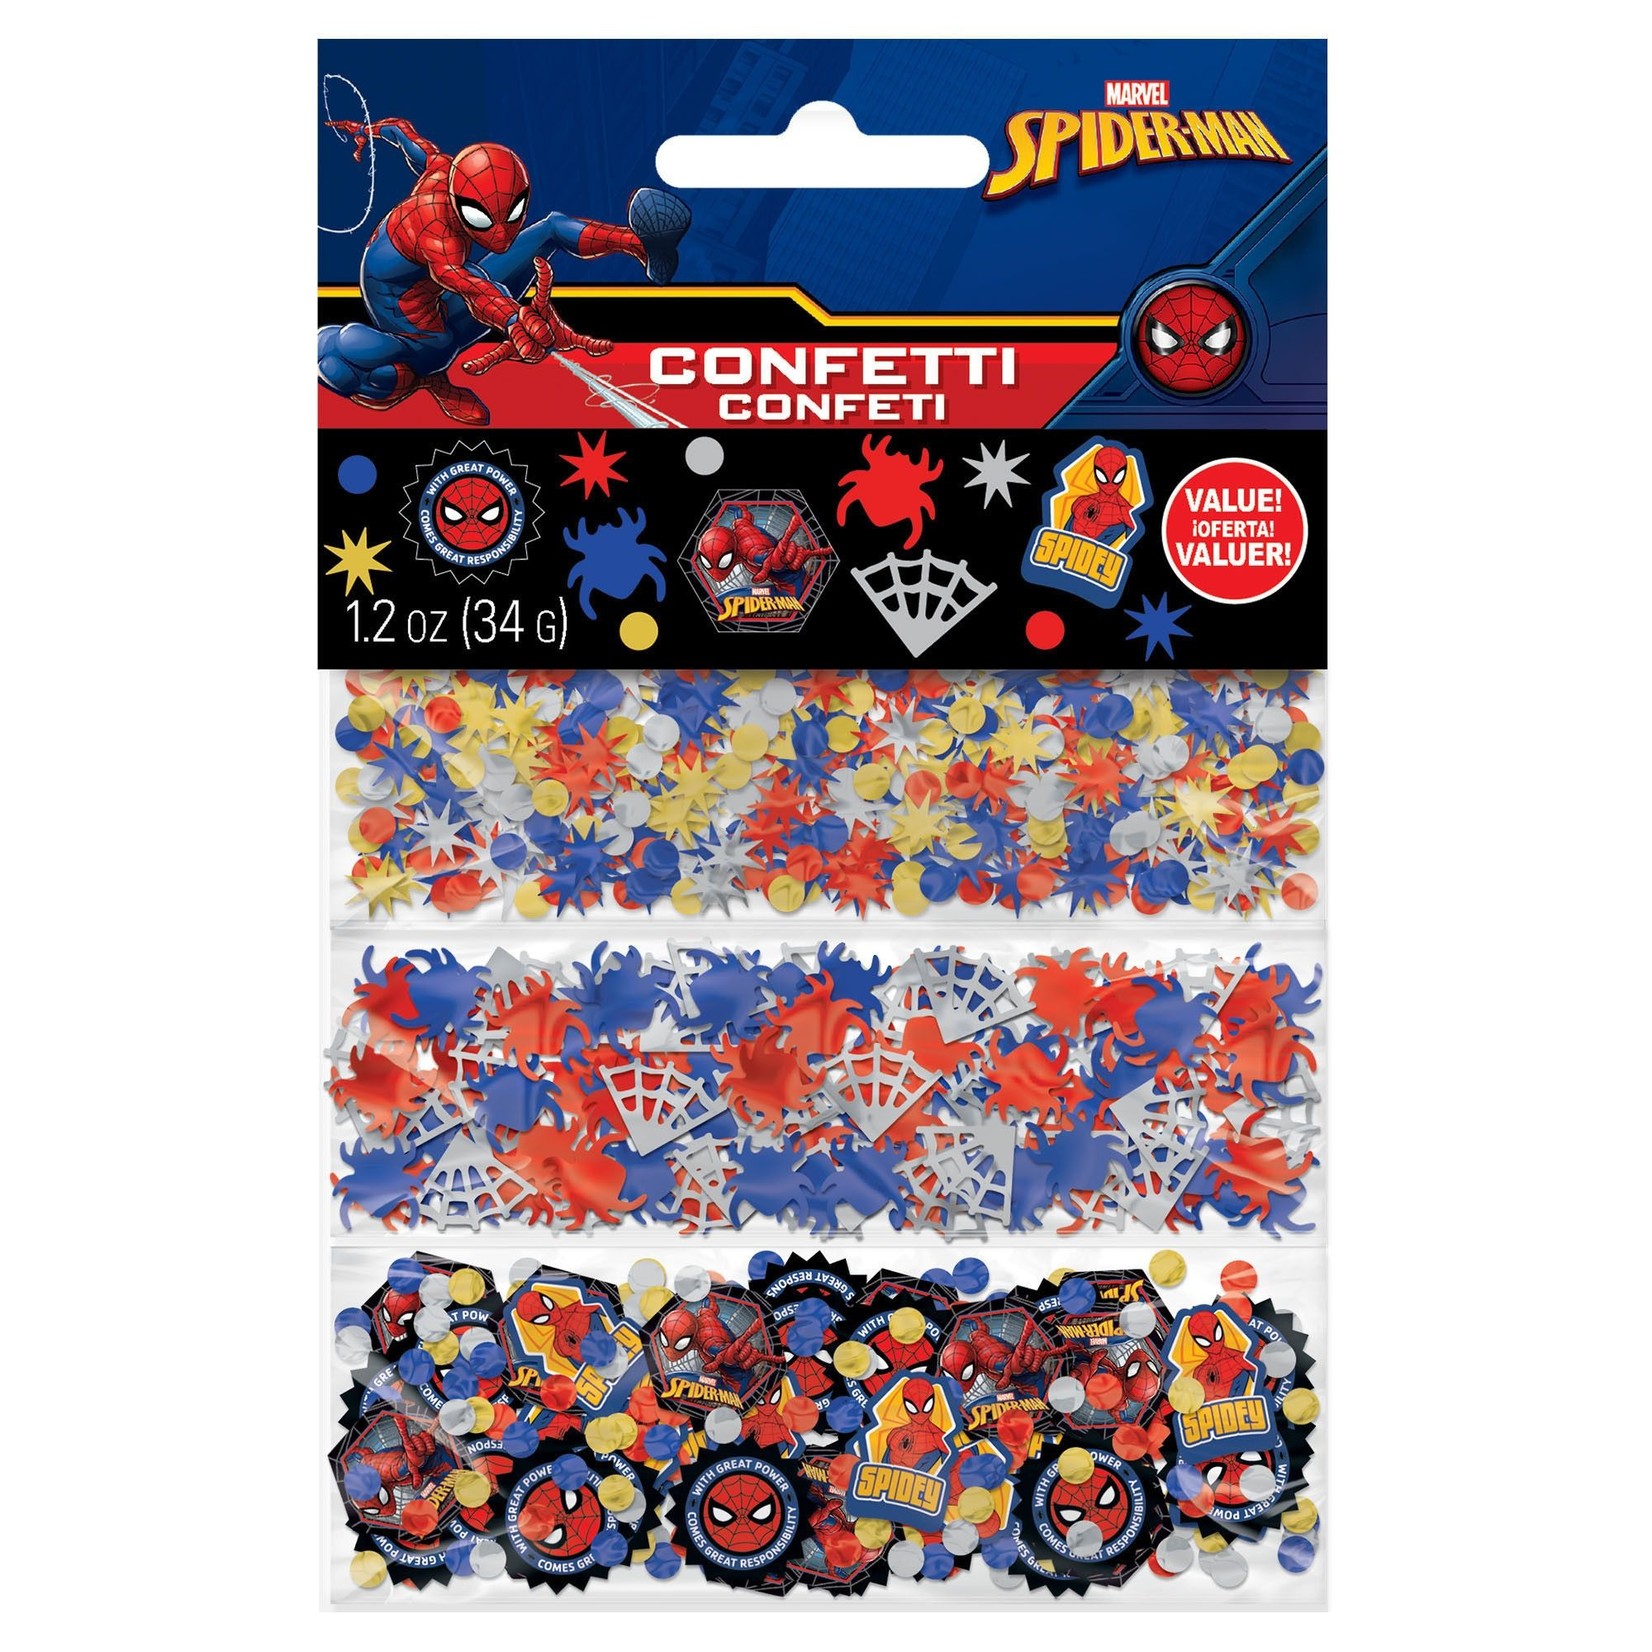 Spider-Man Confetti